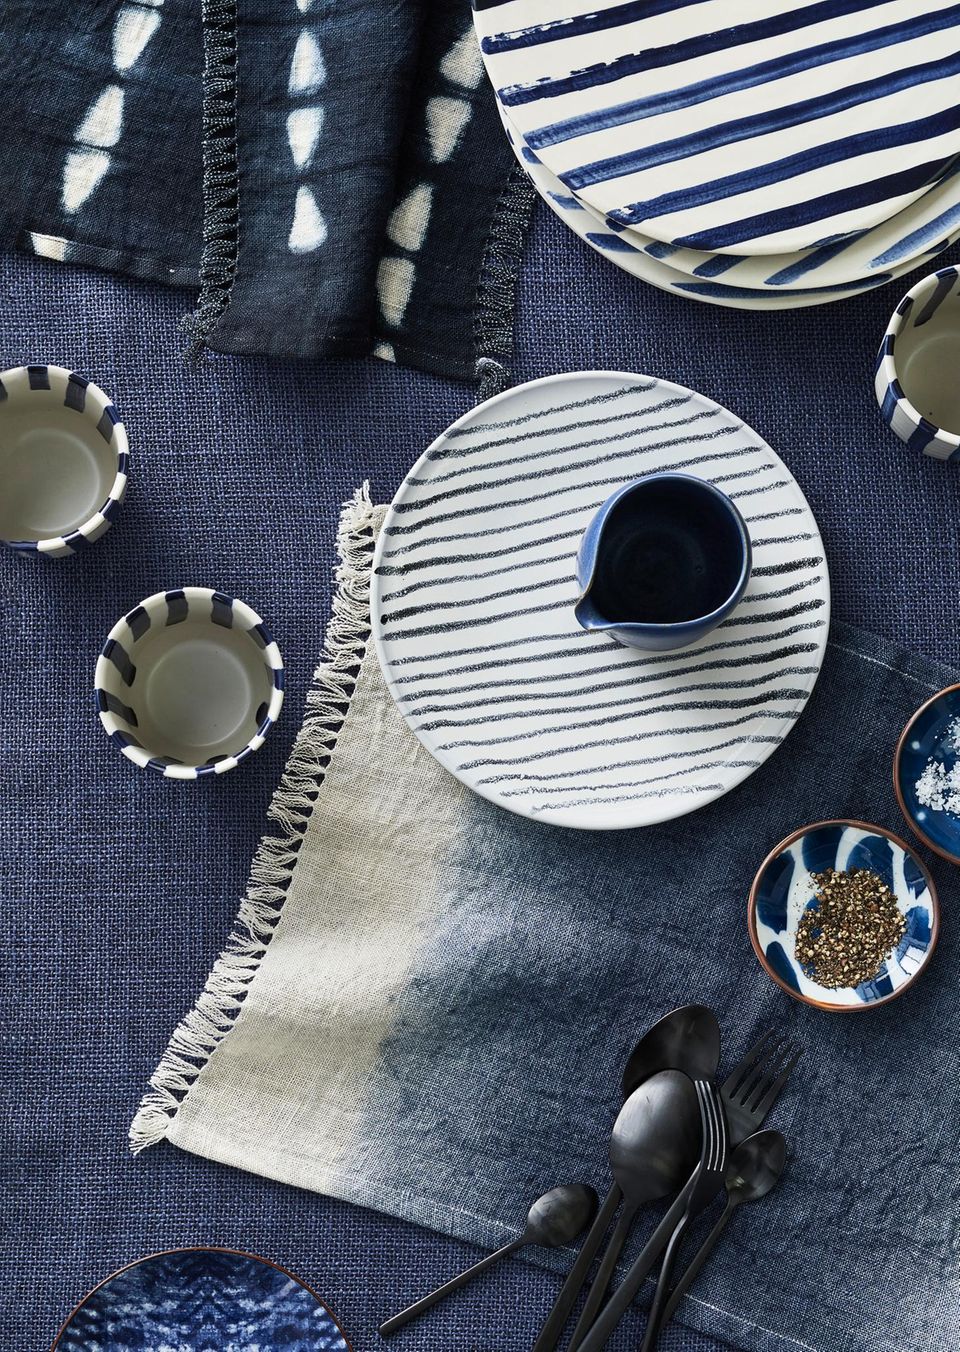 Gedeckter Tisch mit Keramik und Textilien in Blau und Weiß